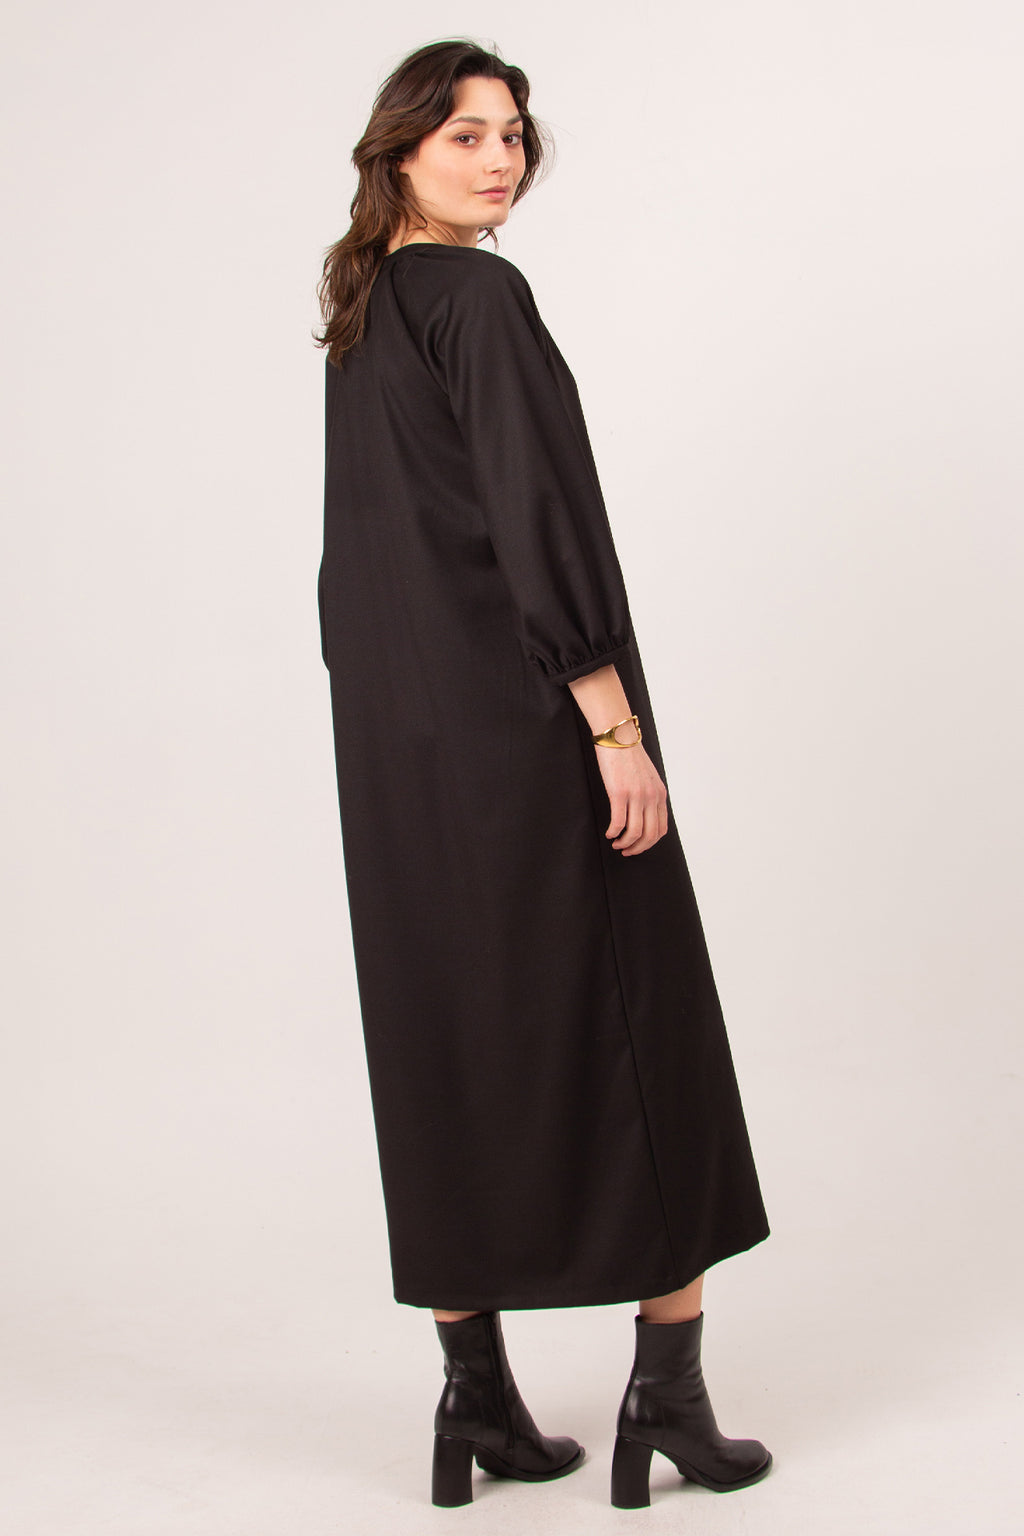 Claudette long black dress